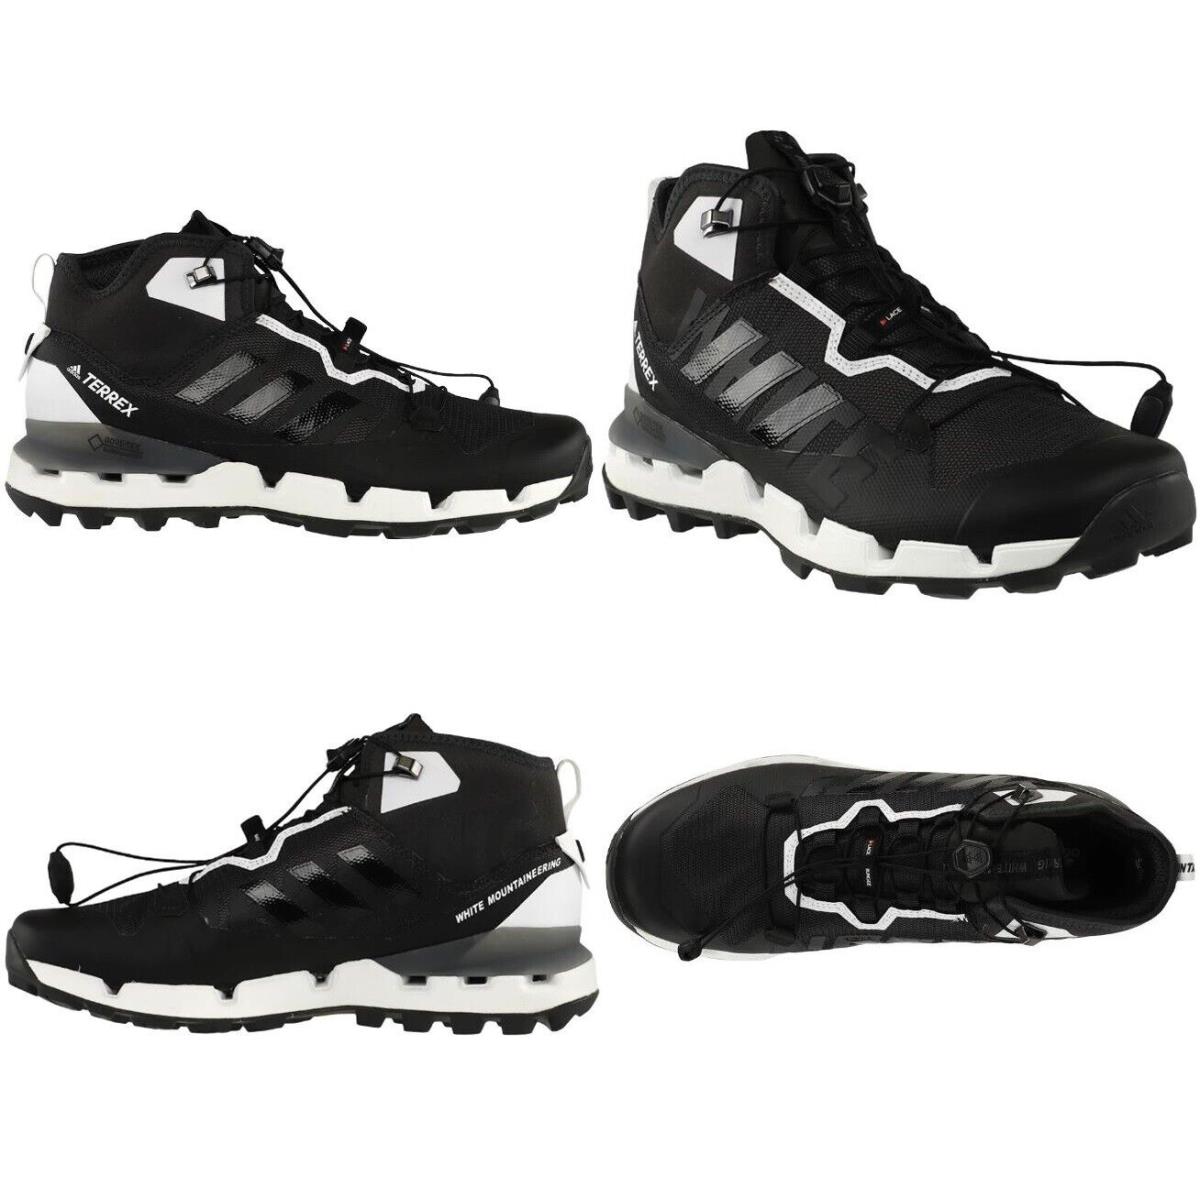 Adidas X White Mountaineering Terrex Fast Gtx Core Black Men Size 10 US DB3007 - Black